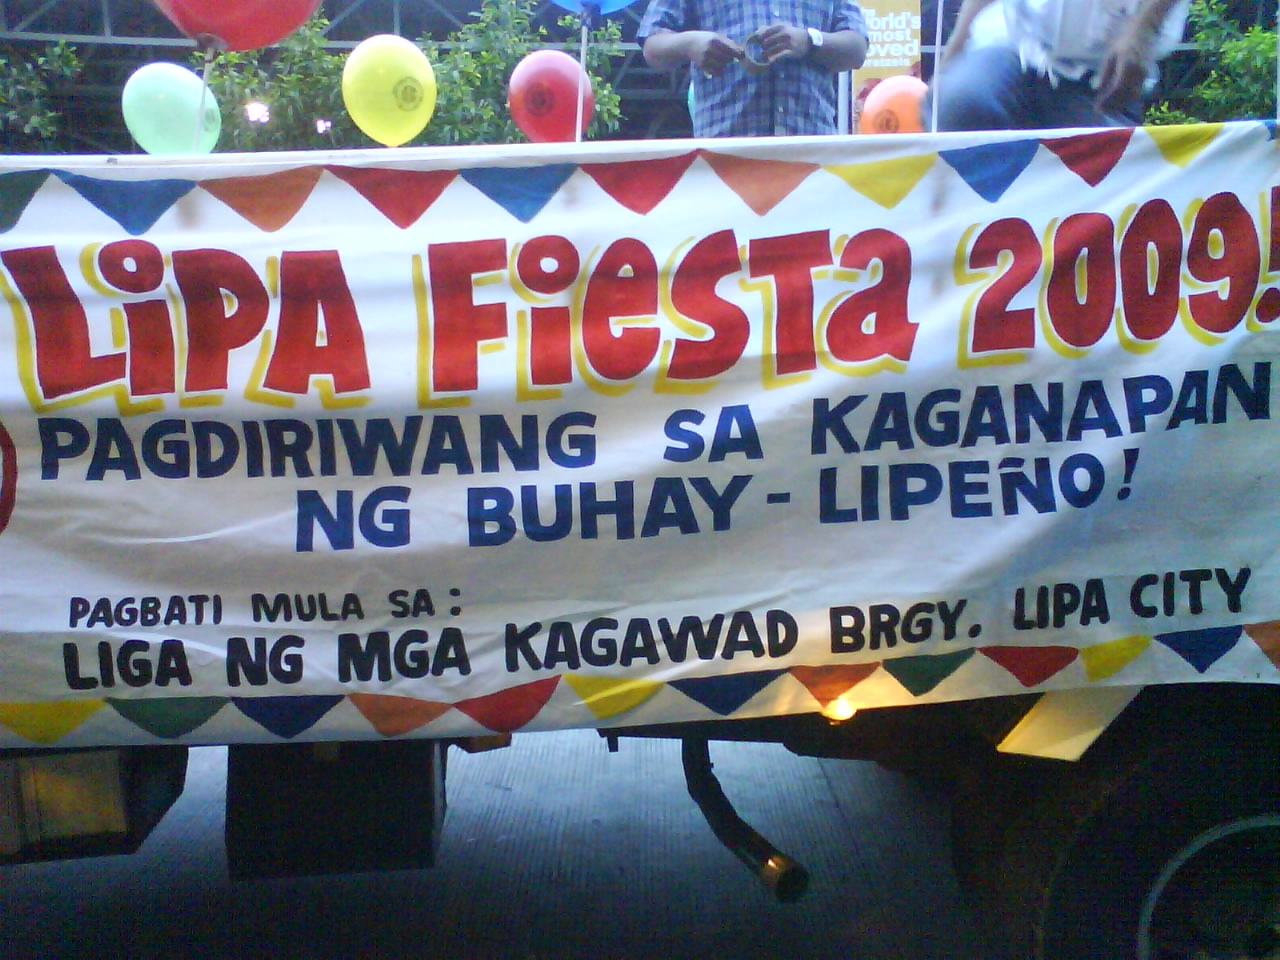 Lipa Fiesta 2009, Pagdiriwang sa Kaganapan ng Buhay- Lipeno ...